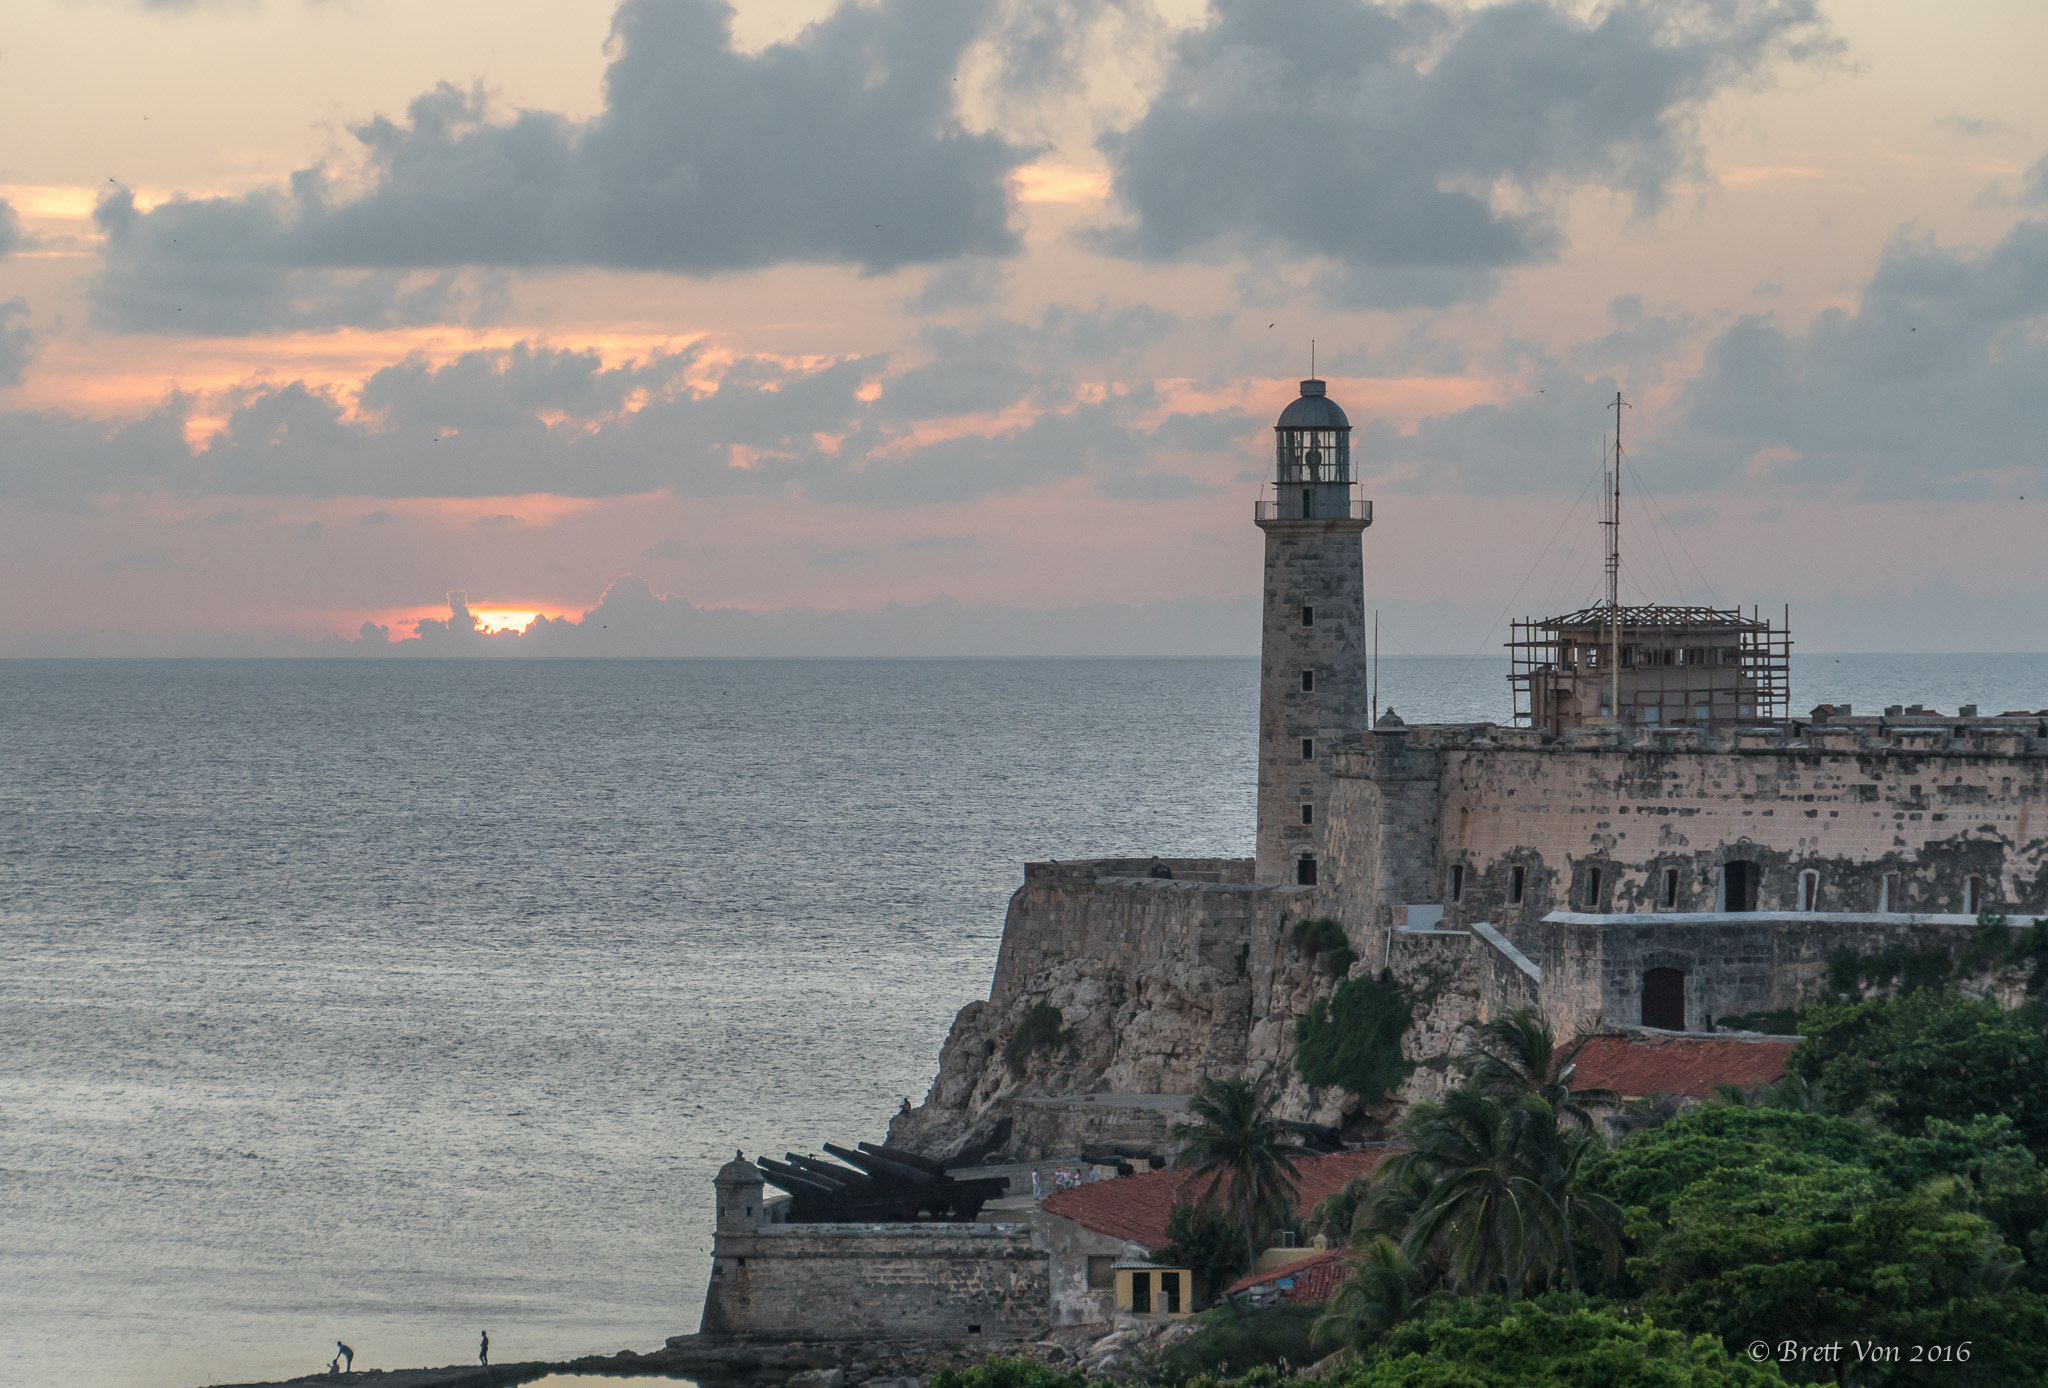 Sony a6300 + Sony E 18-200mm F3.5-6.3 OSS LE sample photo. Havana harbor lighthouse photography